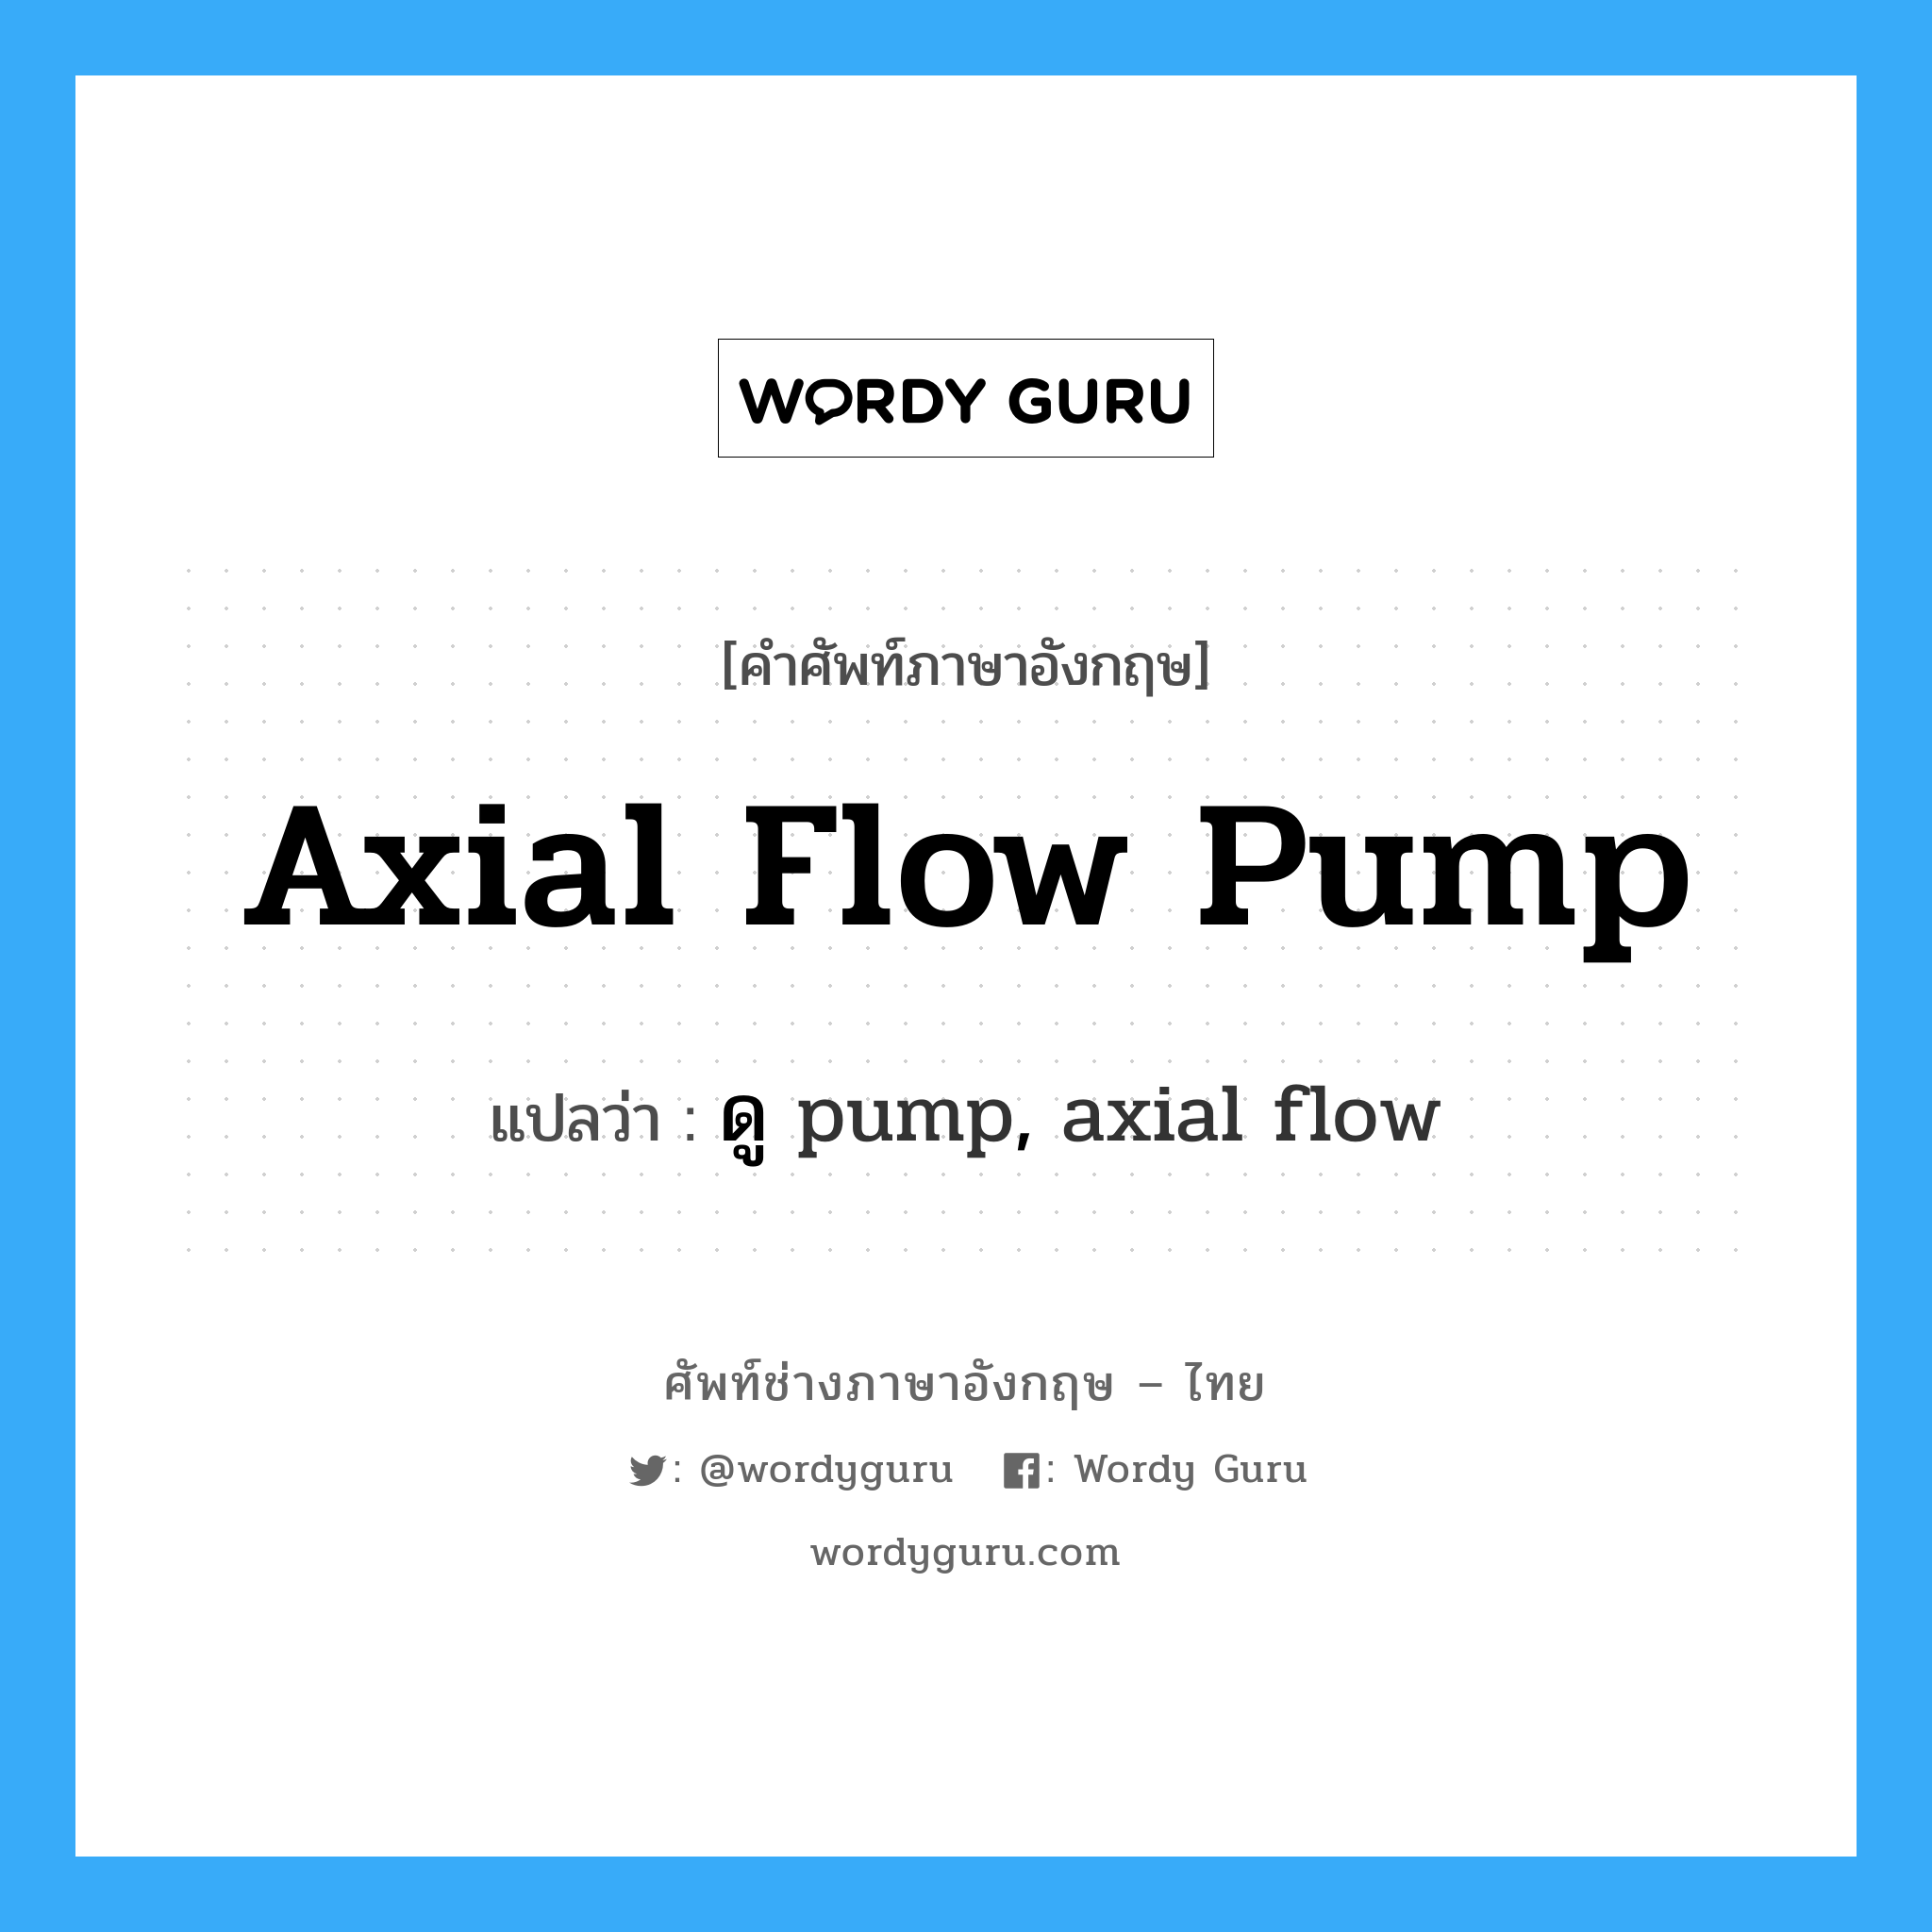 ดู pump, axial flow ภาษาอังกฤษ?, คำศัพท์ช่างภาษาอังกฤษ - ไทย ดู pump, axial flow คำศัพท์ภาษาอังกฤษ ดู pump, axial flow แปลว่า axial flow pump